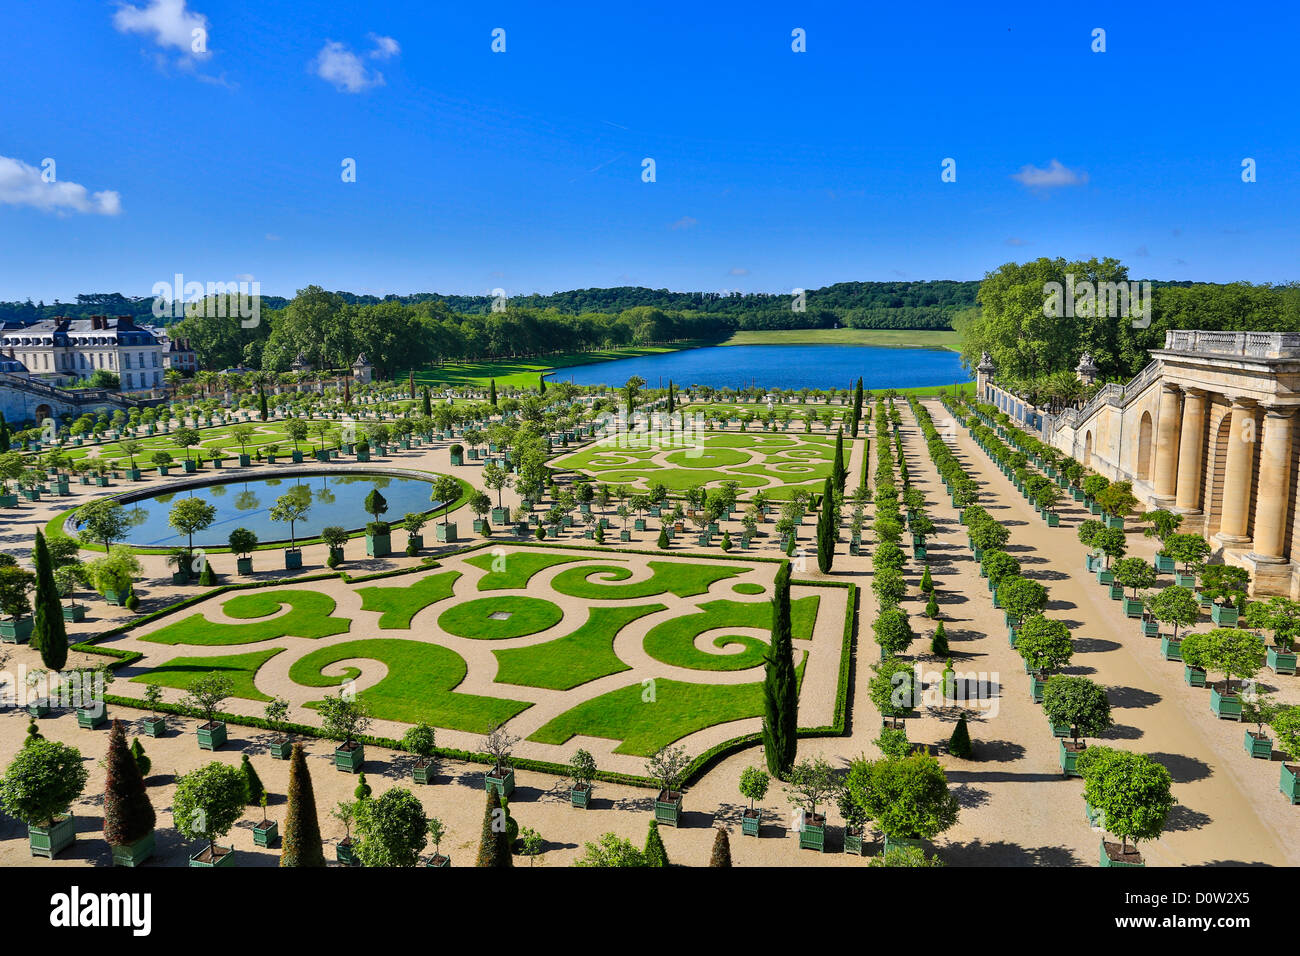 France, Europe, voyage, Versailles, patrimoine mondial, de jardins, de détail, l'architecture, château, histoire, tourisme, Unesco Banque D'Images